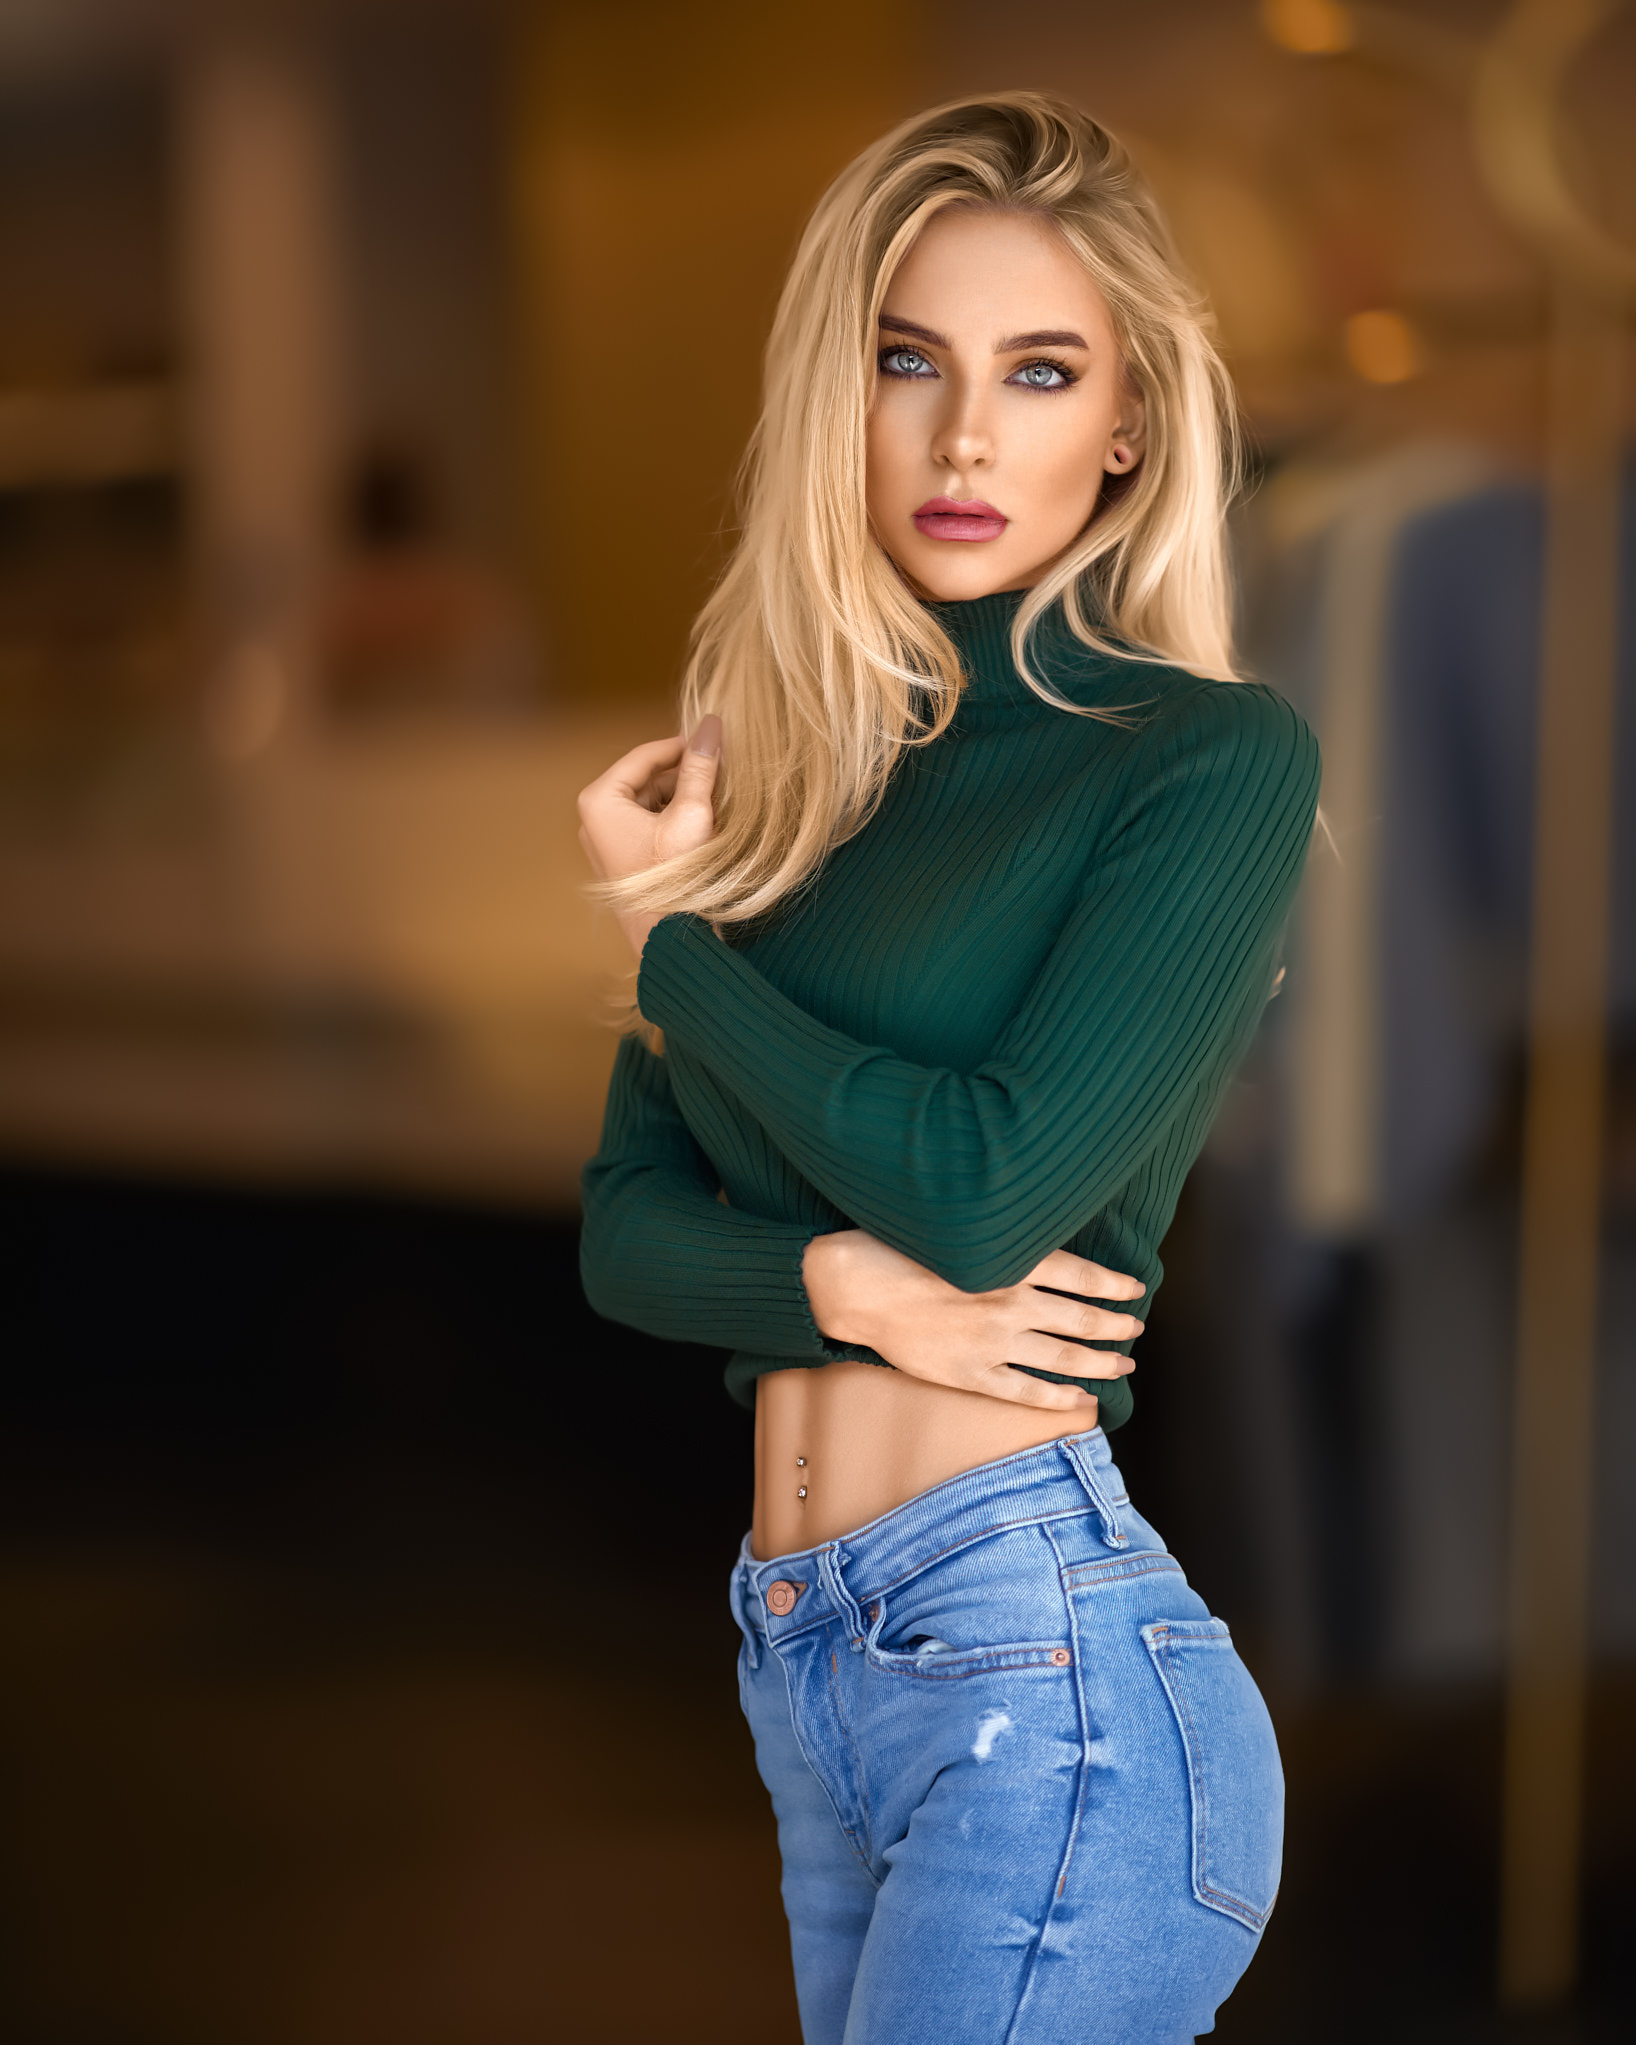 Weniamin Schmidt Women Blonde Long Hair Blue Eyes Turtlenecks Green Clothing Jeans Depth Of Field Lo 1636x2045